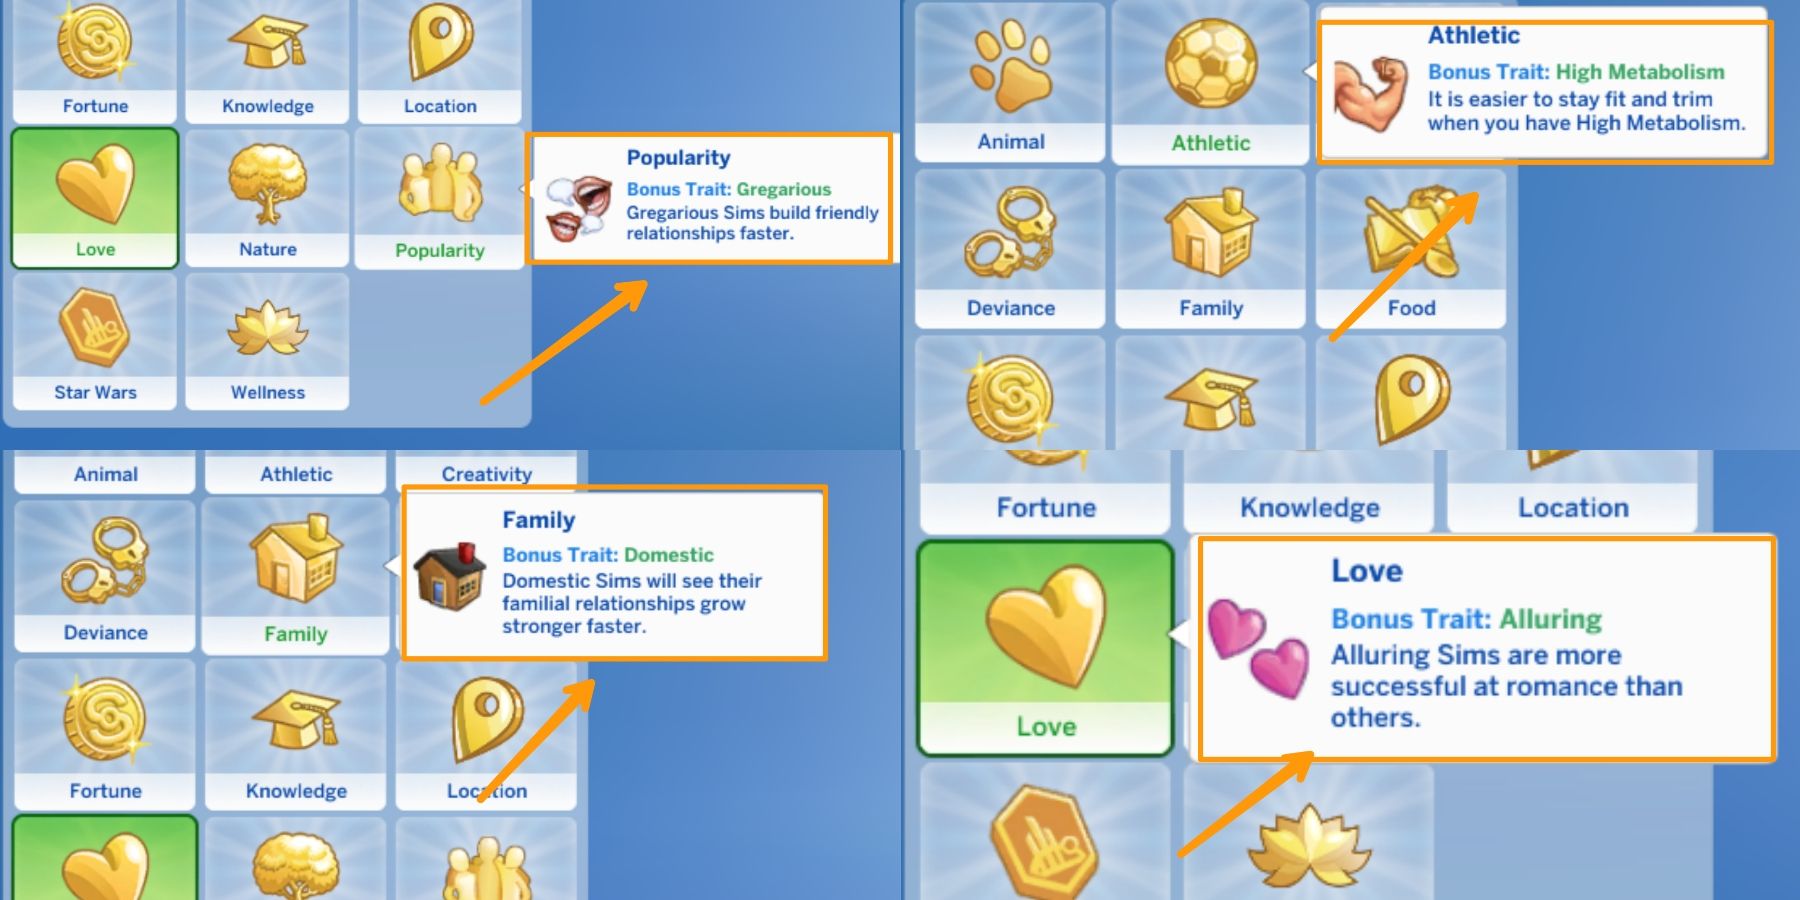 bonus traits in the Sims 4